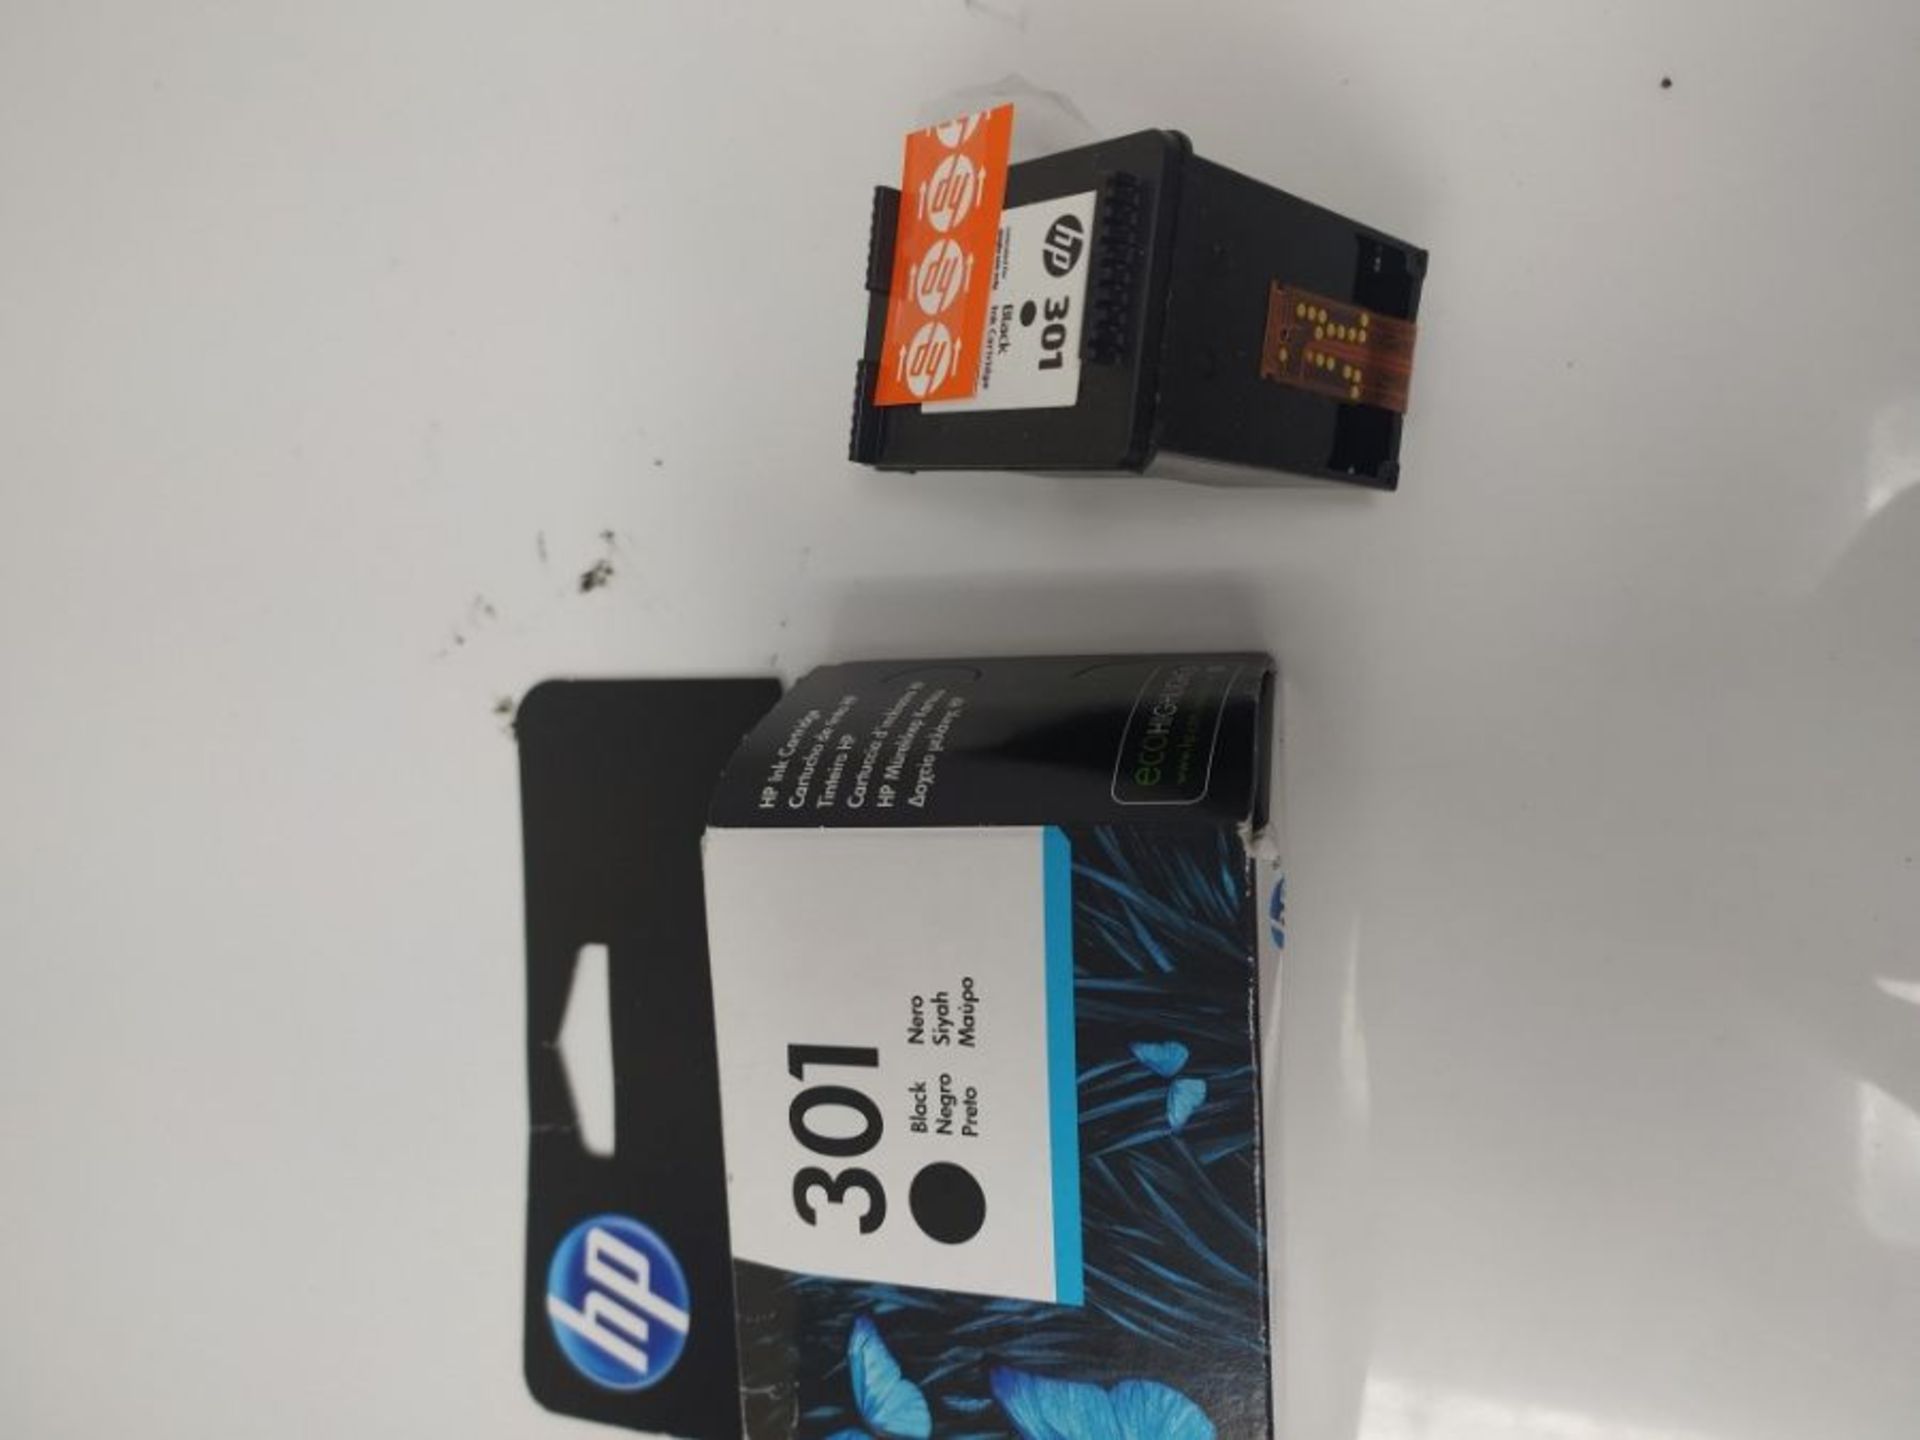 HP CH561EE 301 Original Ink Cartridge, Black, Single Pack - Image 2 of 2